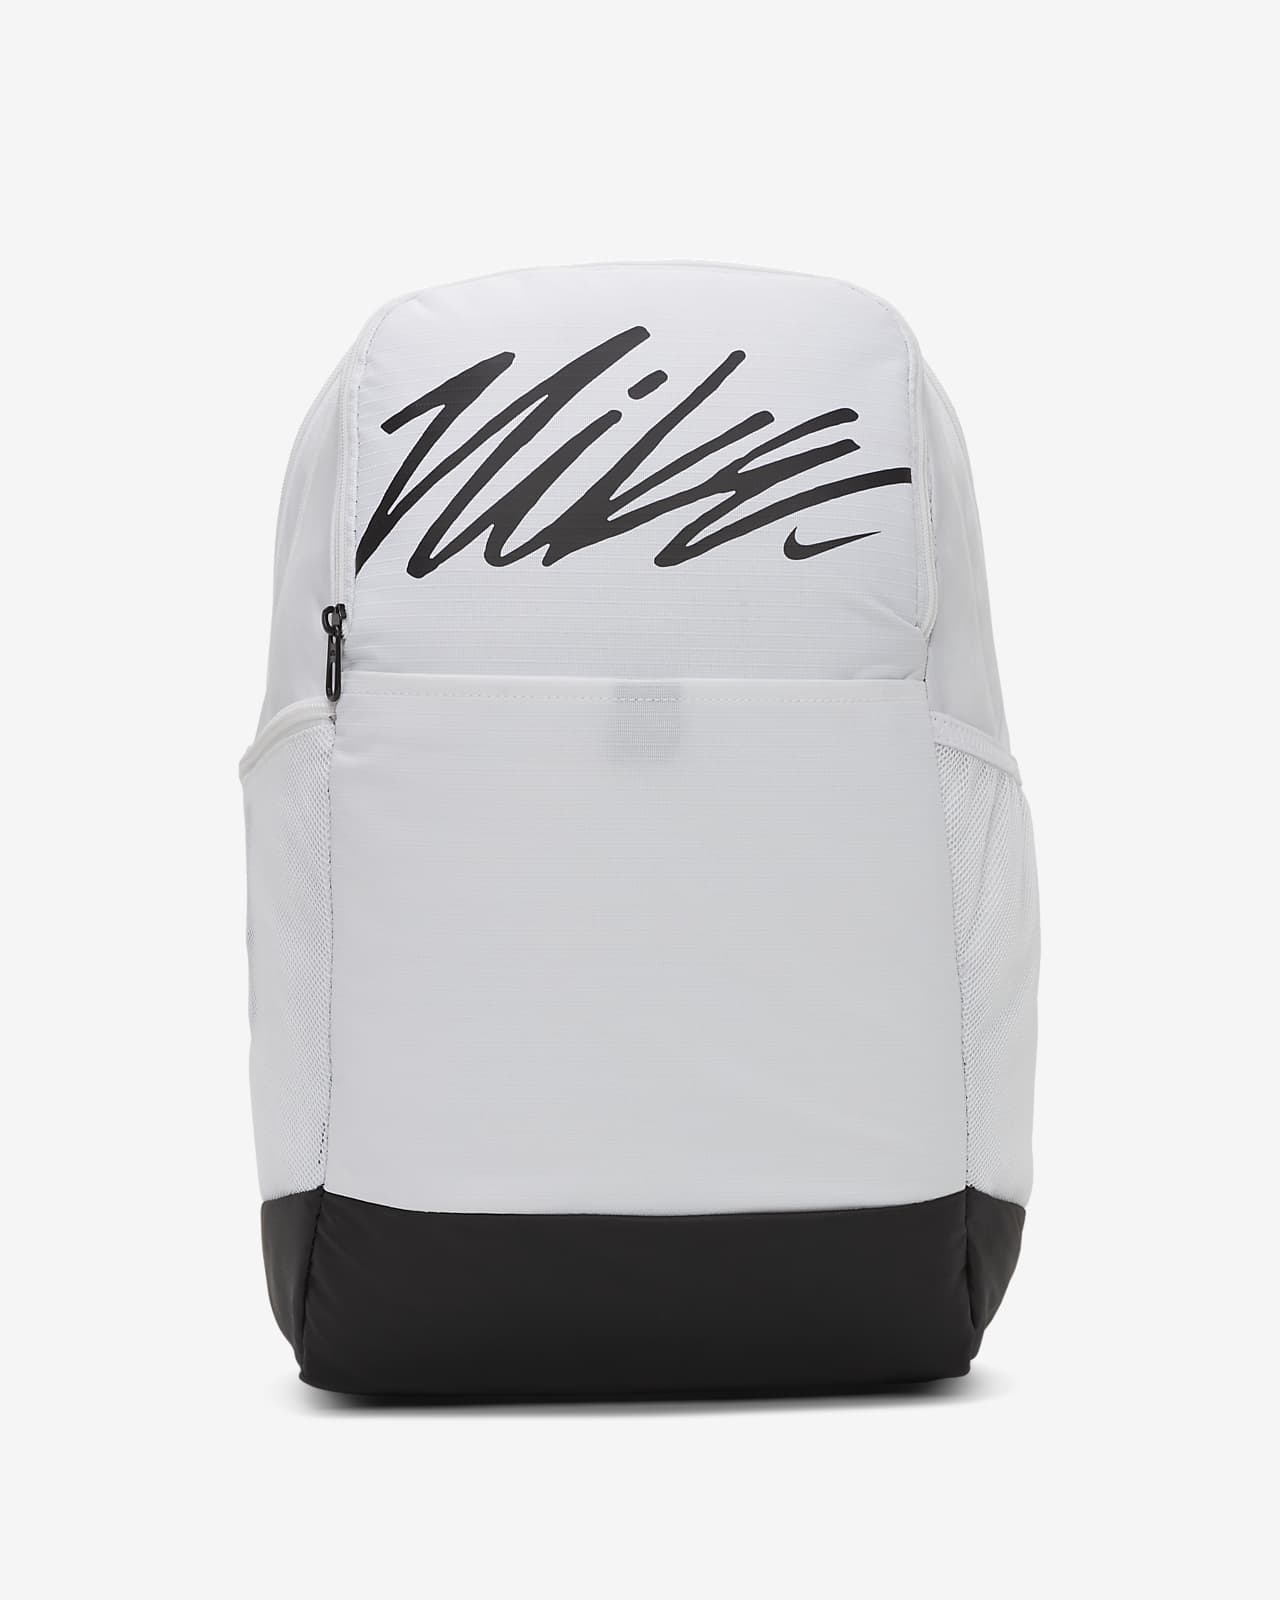 nike backpack white